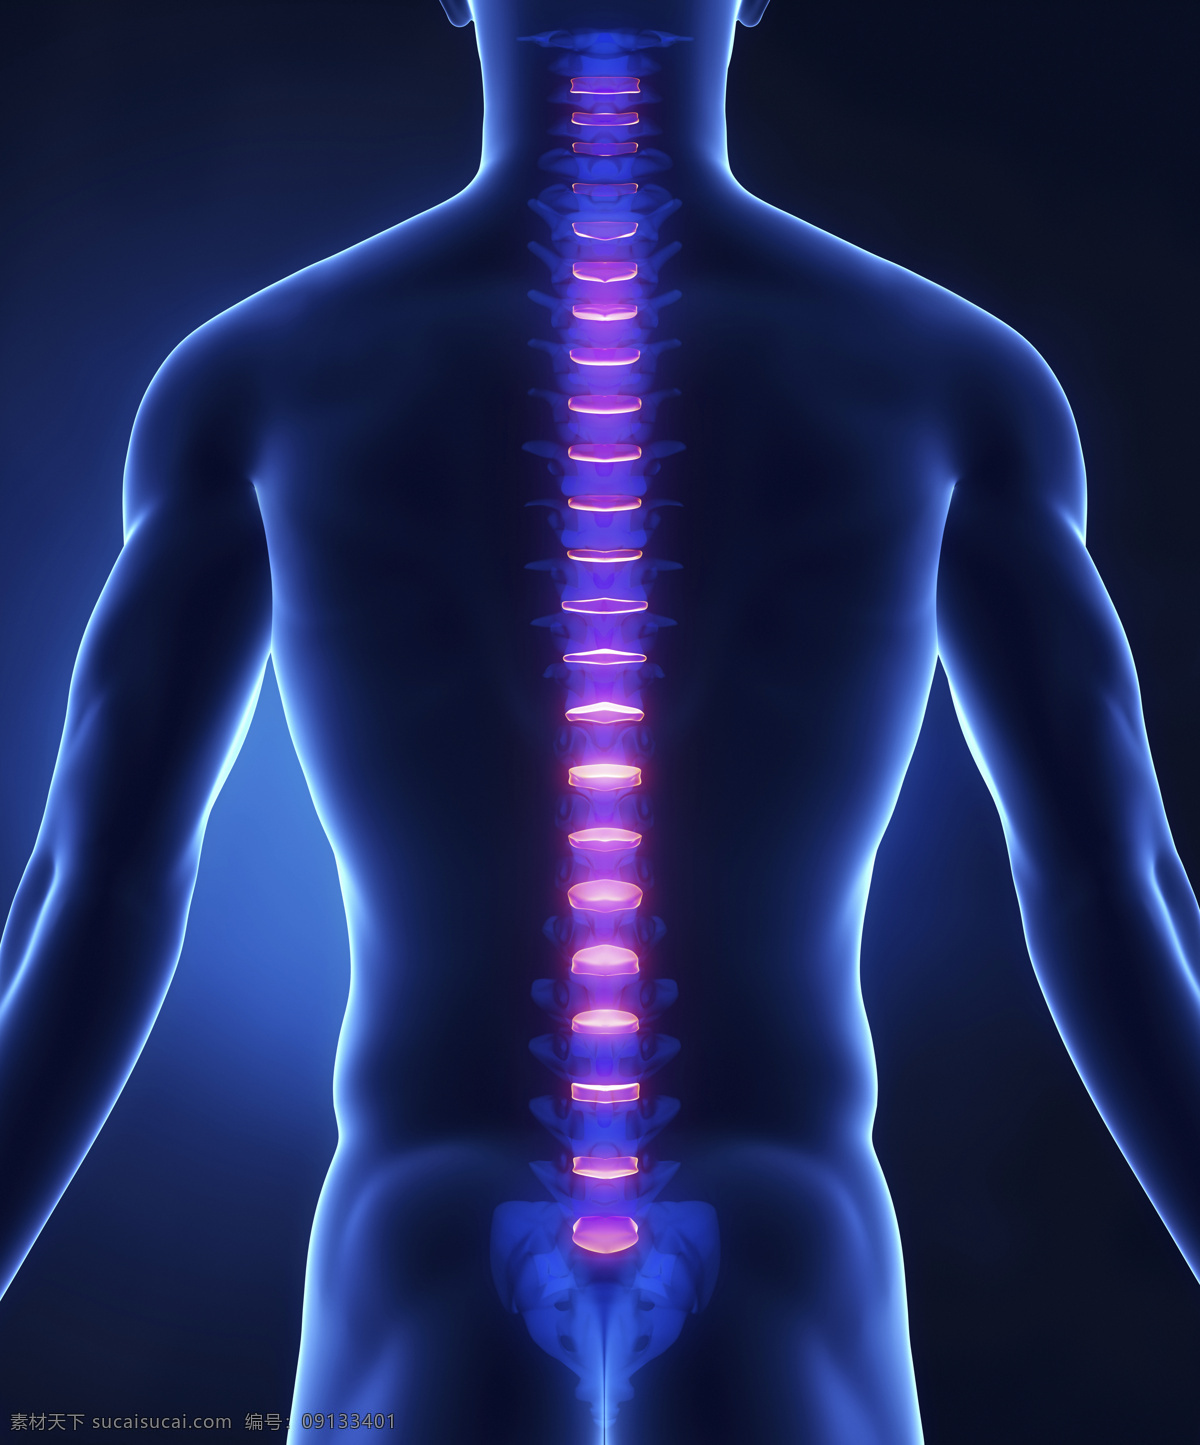 男性 背部 脊椎 骨骼 脊髓 男性人体器官 医疗科学 医学 人体器官图 人物图片